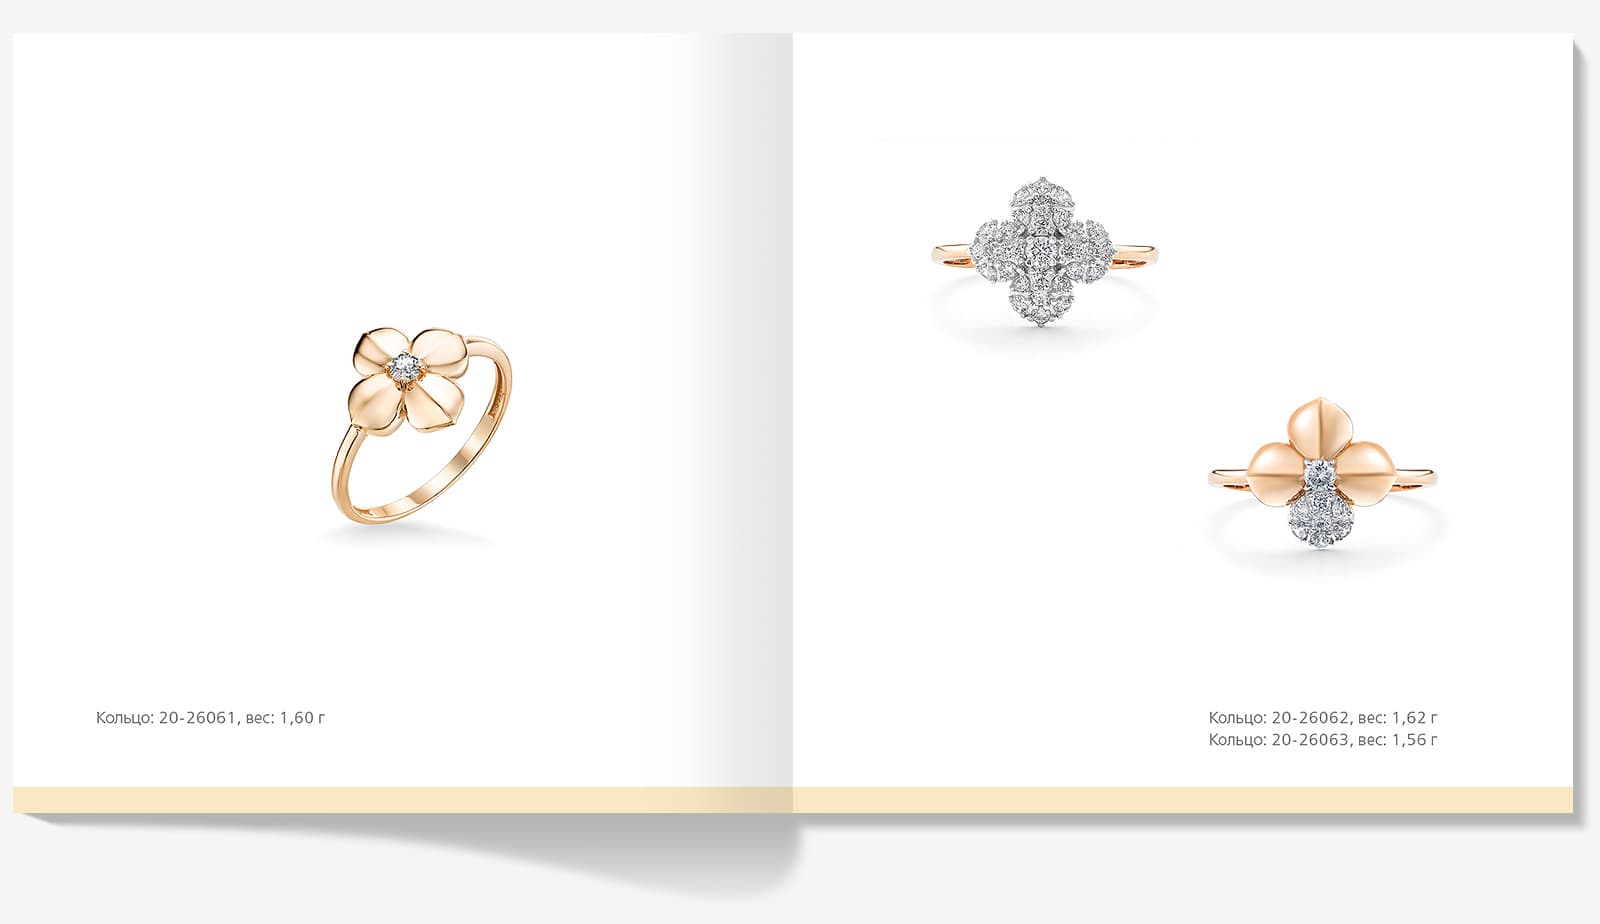 Сделали дизайн серии брошюр с коллекциями ювелирных украшений для компании «Ювелиры Северной Столицы»